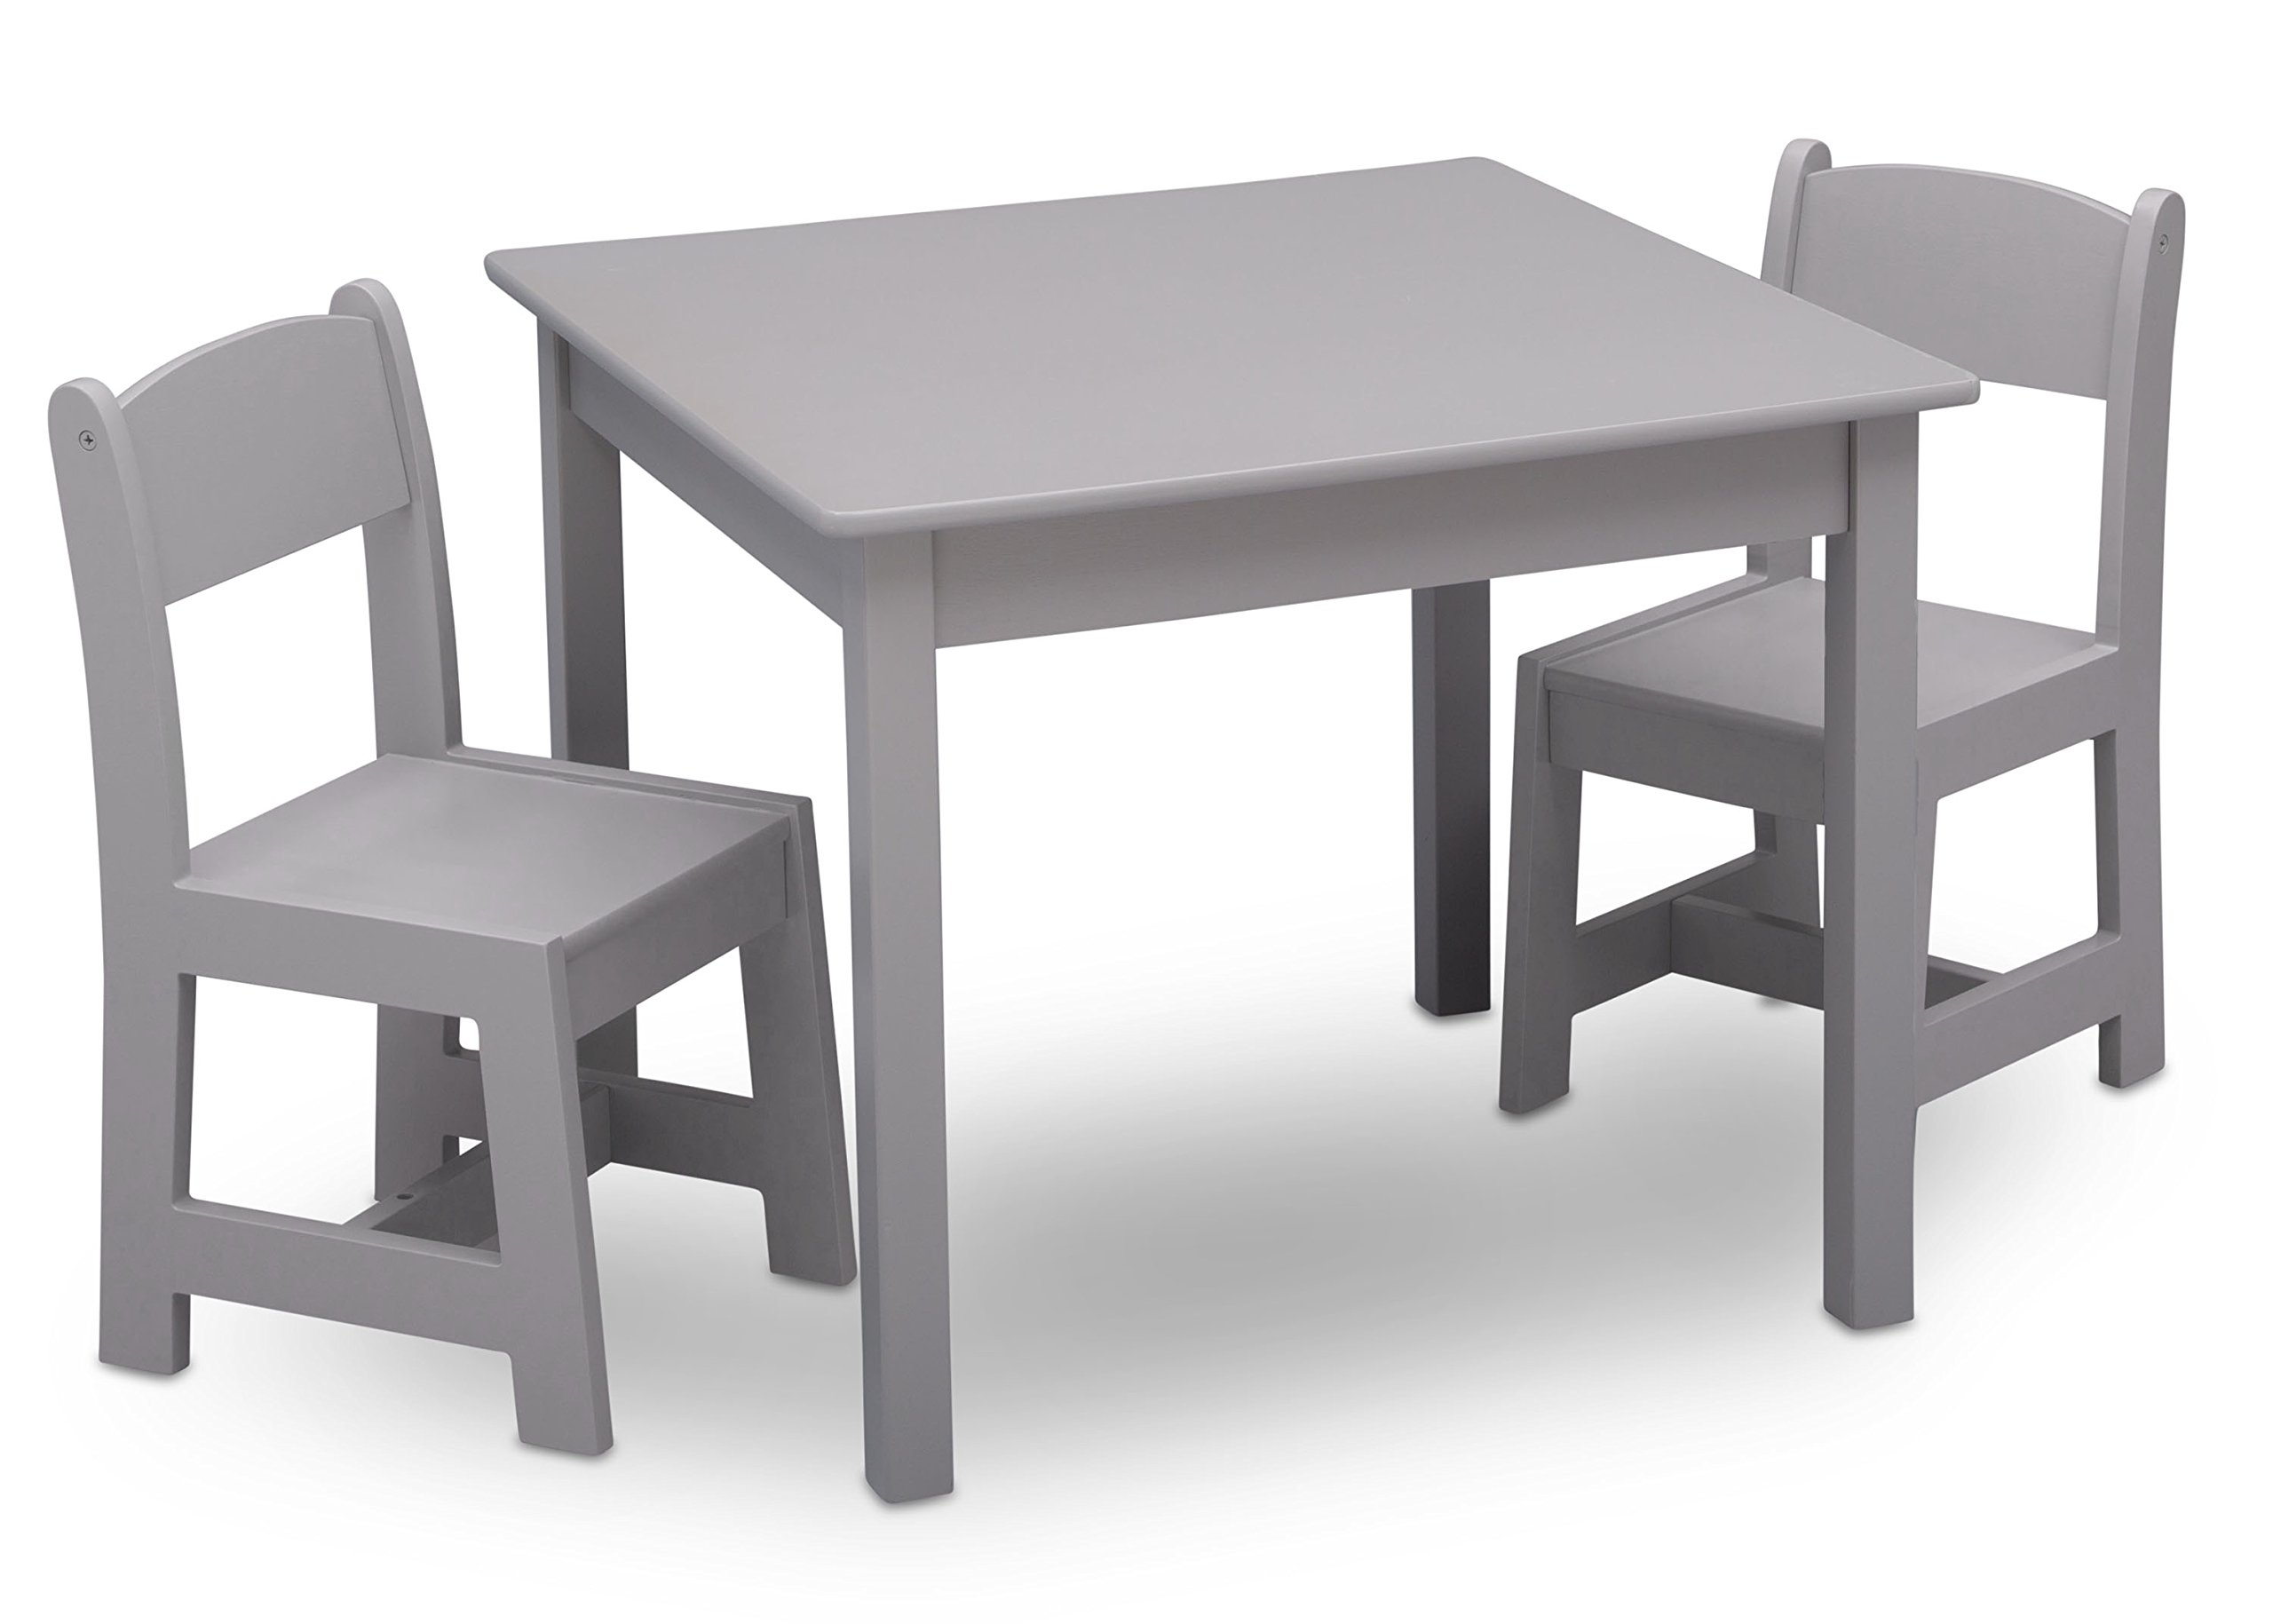  Delta Children MySize キッズ木製テーブルと椅子セット (椅子 2 脚付き) - アートや工芸品、おやつタイムなどに最適 - Greenguard ゴールド認定、グレー、3...